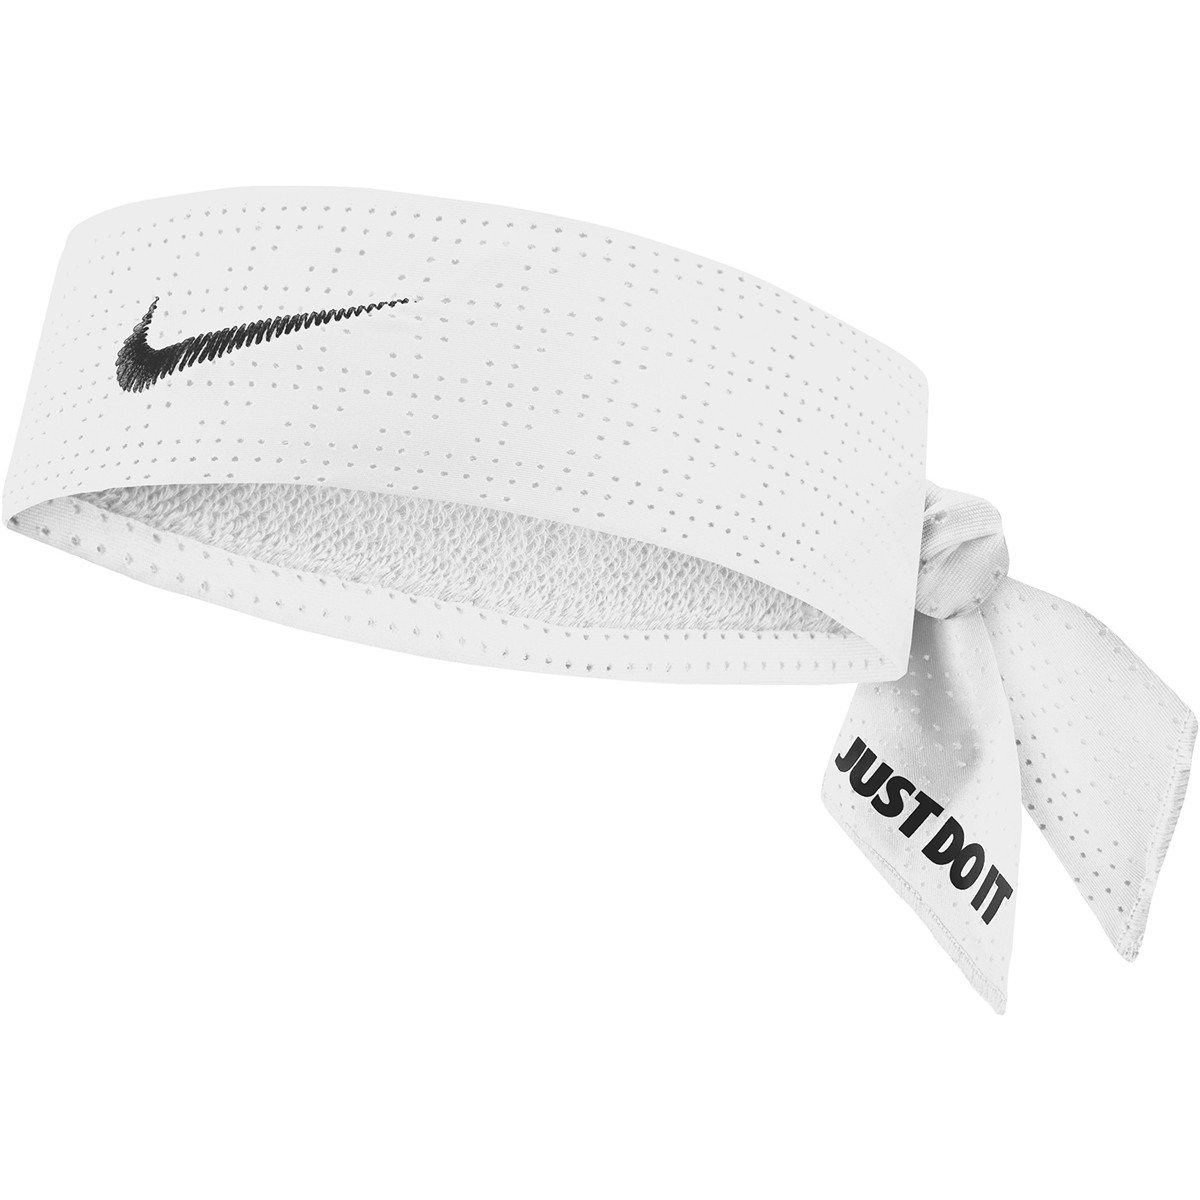 Bandeau tennis à nouer Nike Headband Premier coloris rouge et blanc